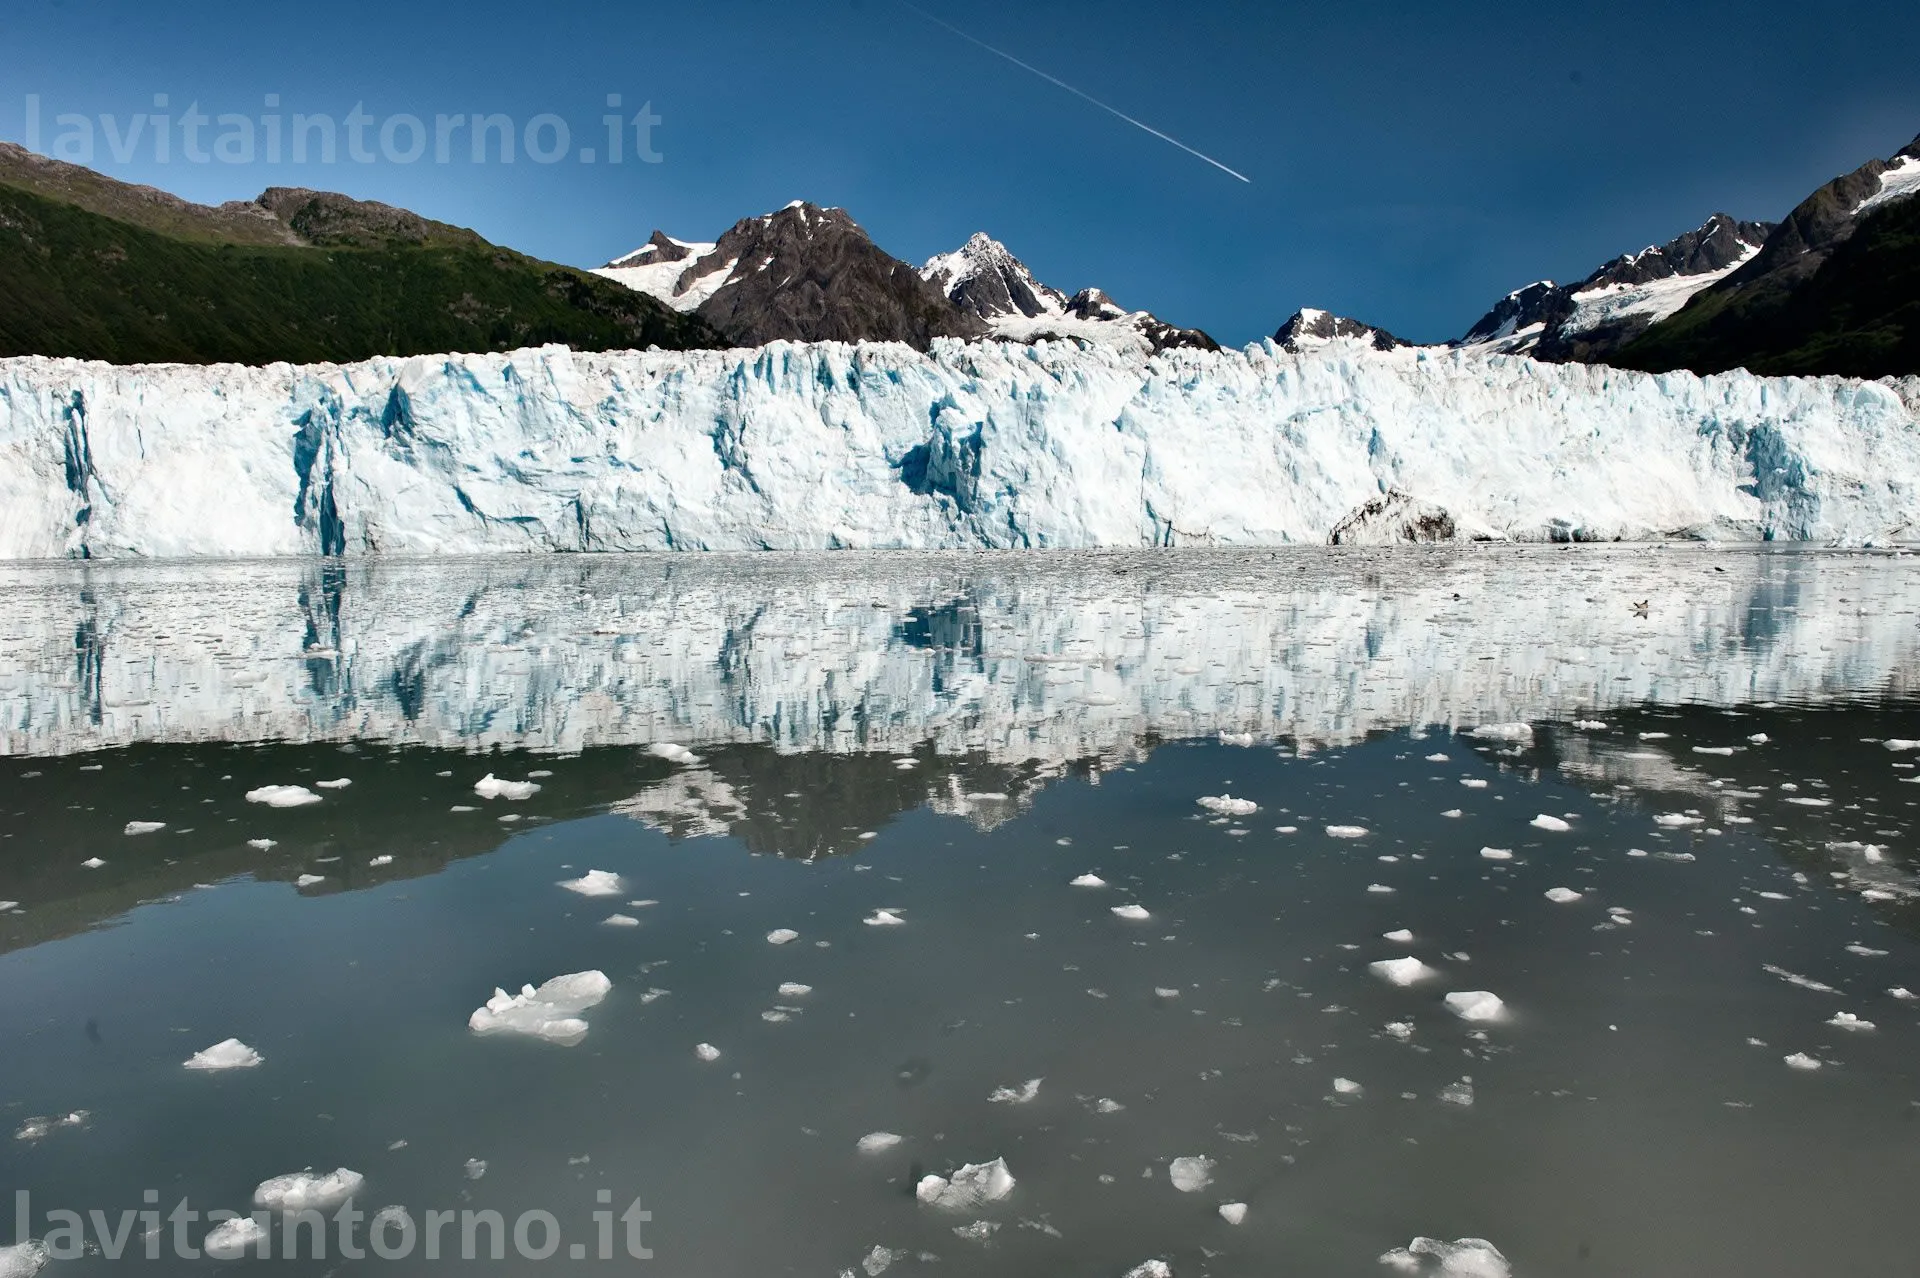 Columbia glacier #2
D700
Nikkor 24-70 F/2.8G AF-S